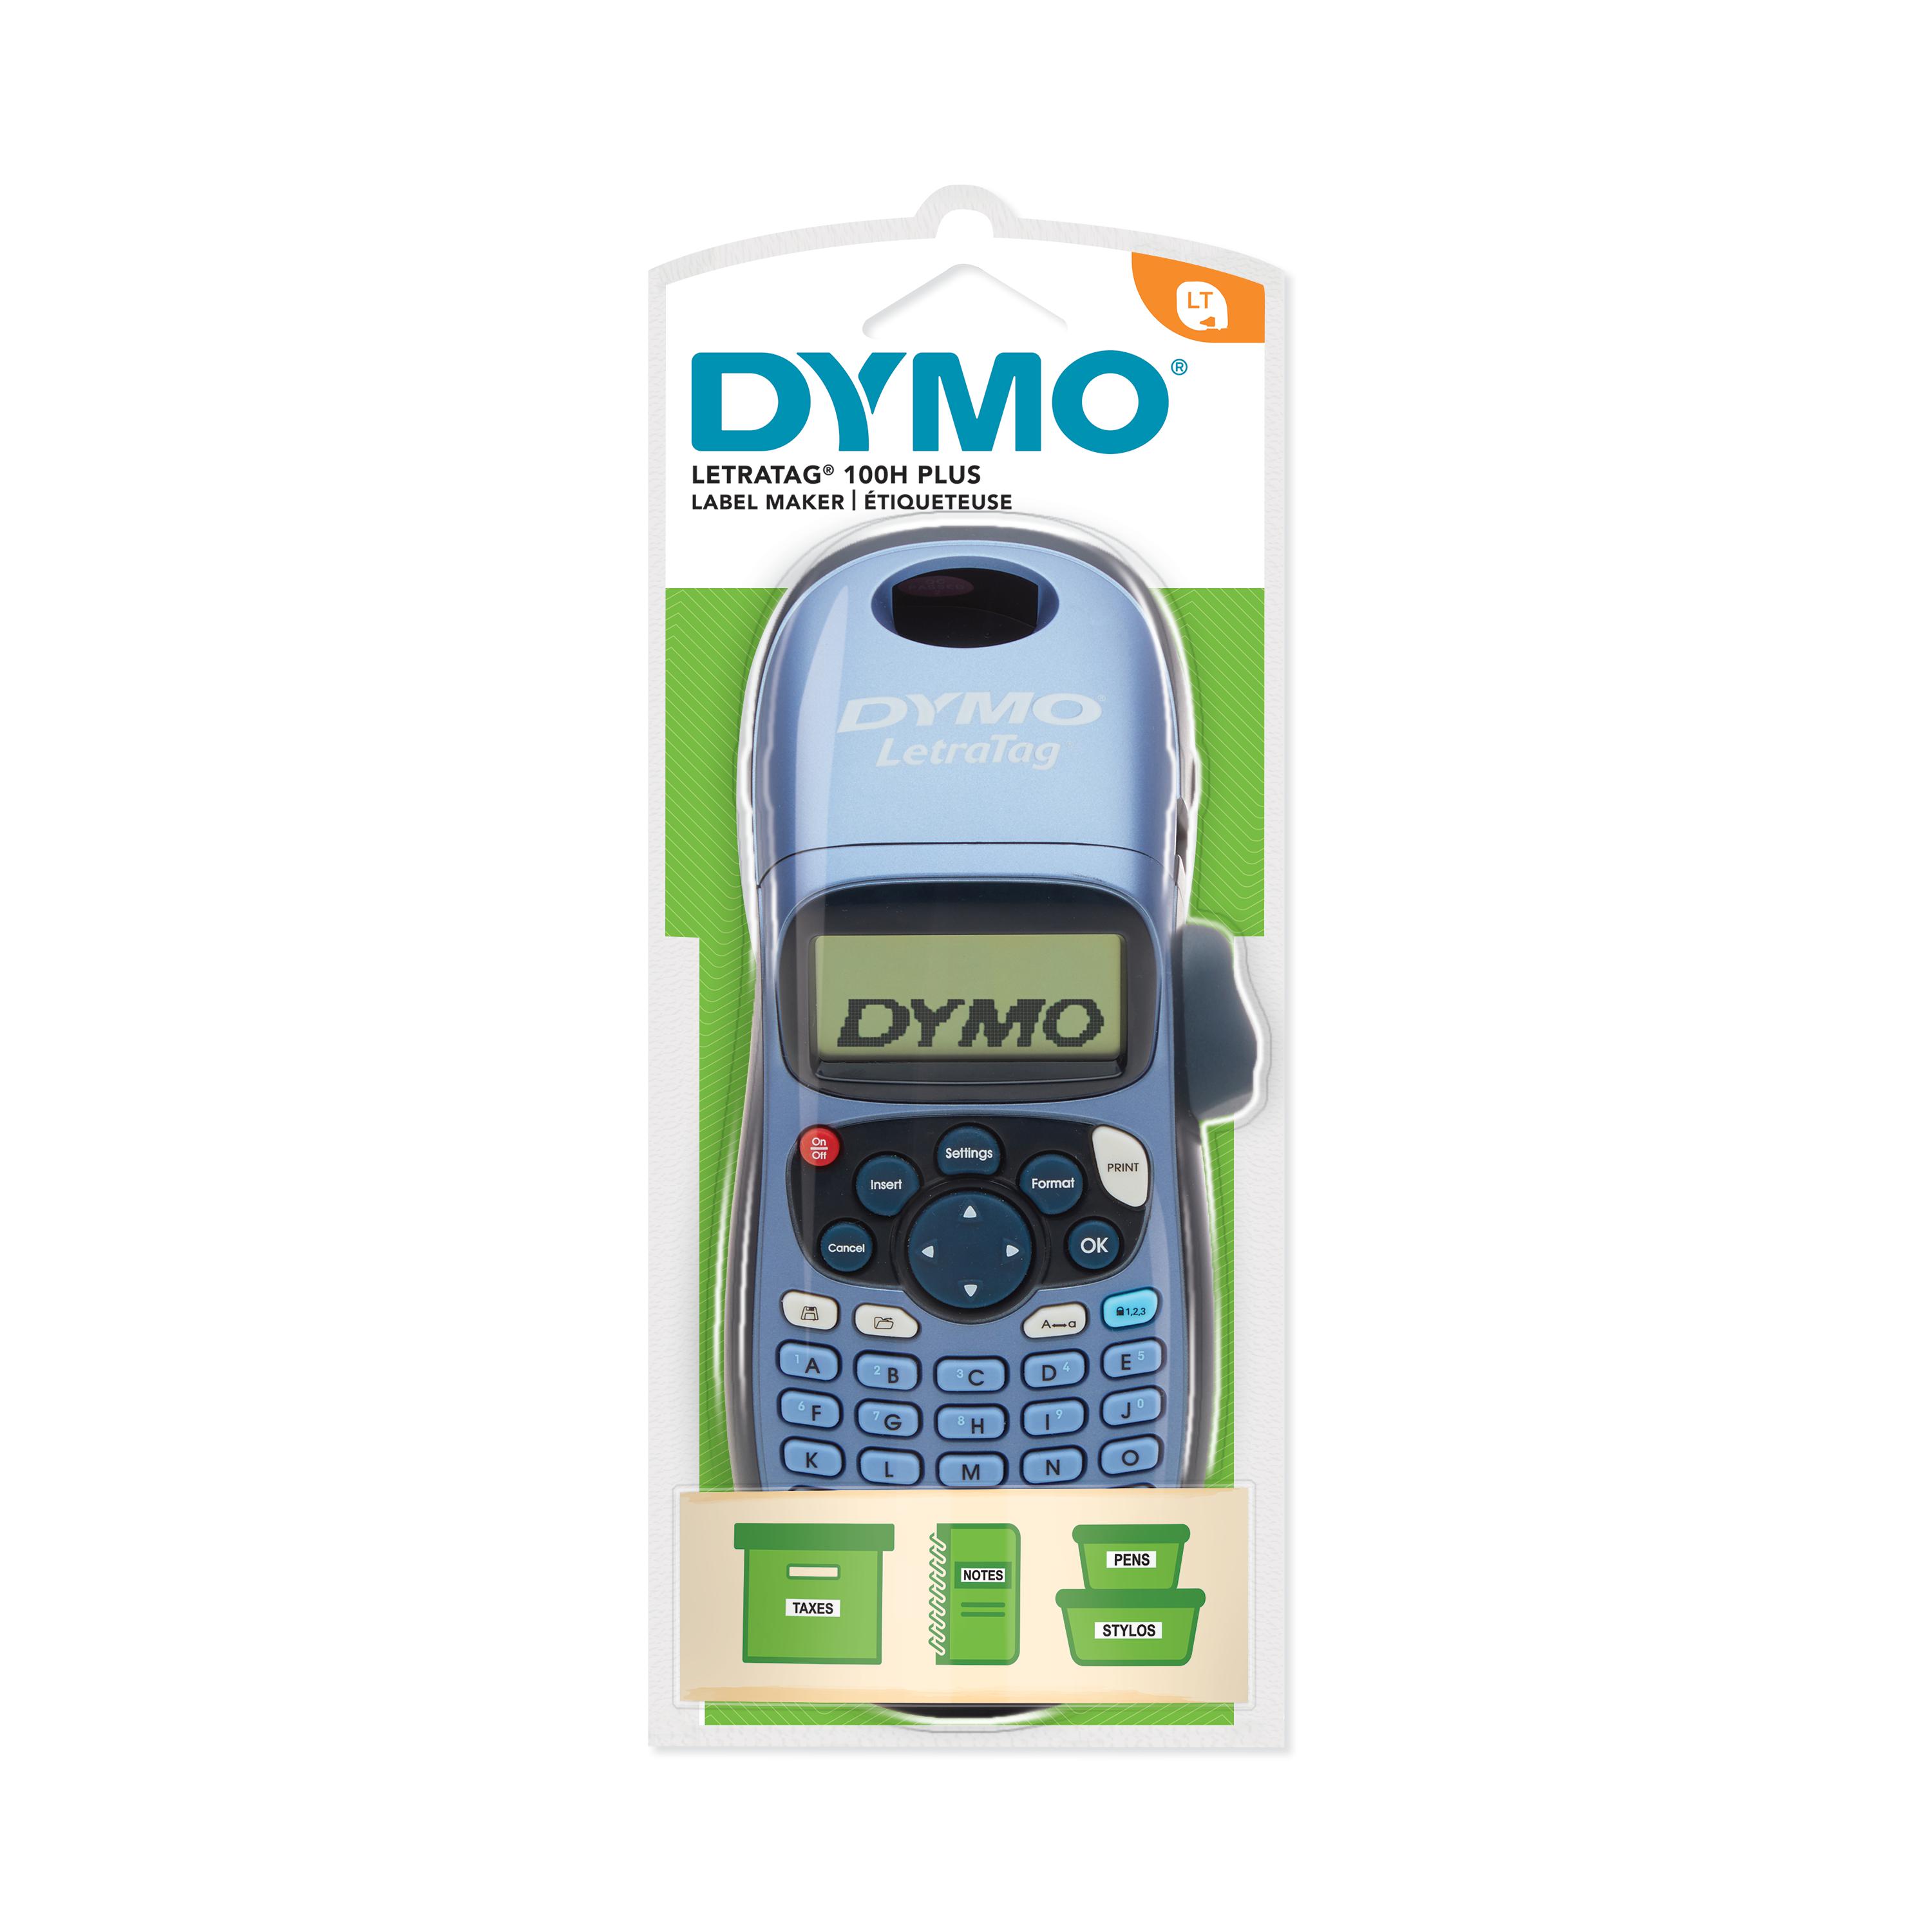 DYMO® : Étiqueteuses et Imprimantes, Étiquettes, et plus encore !